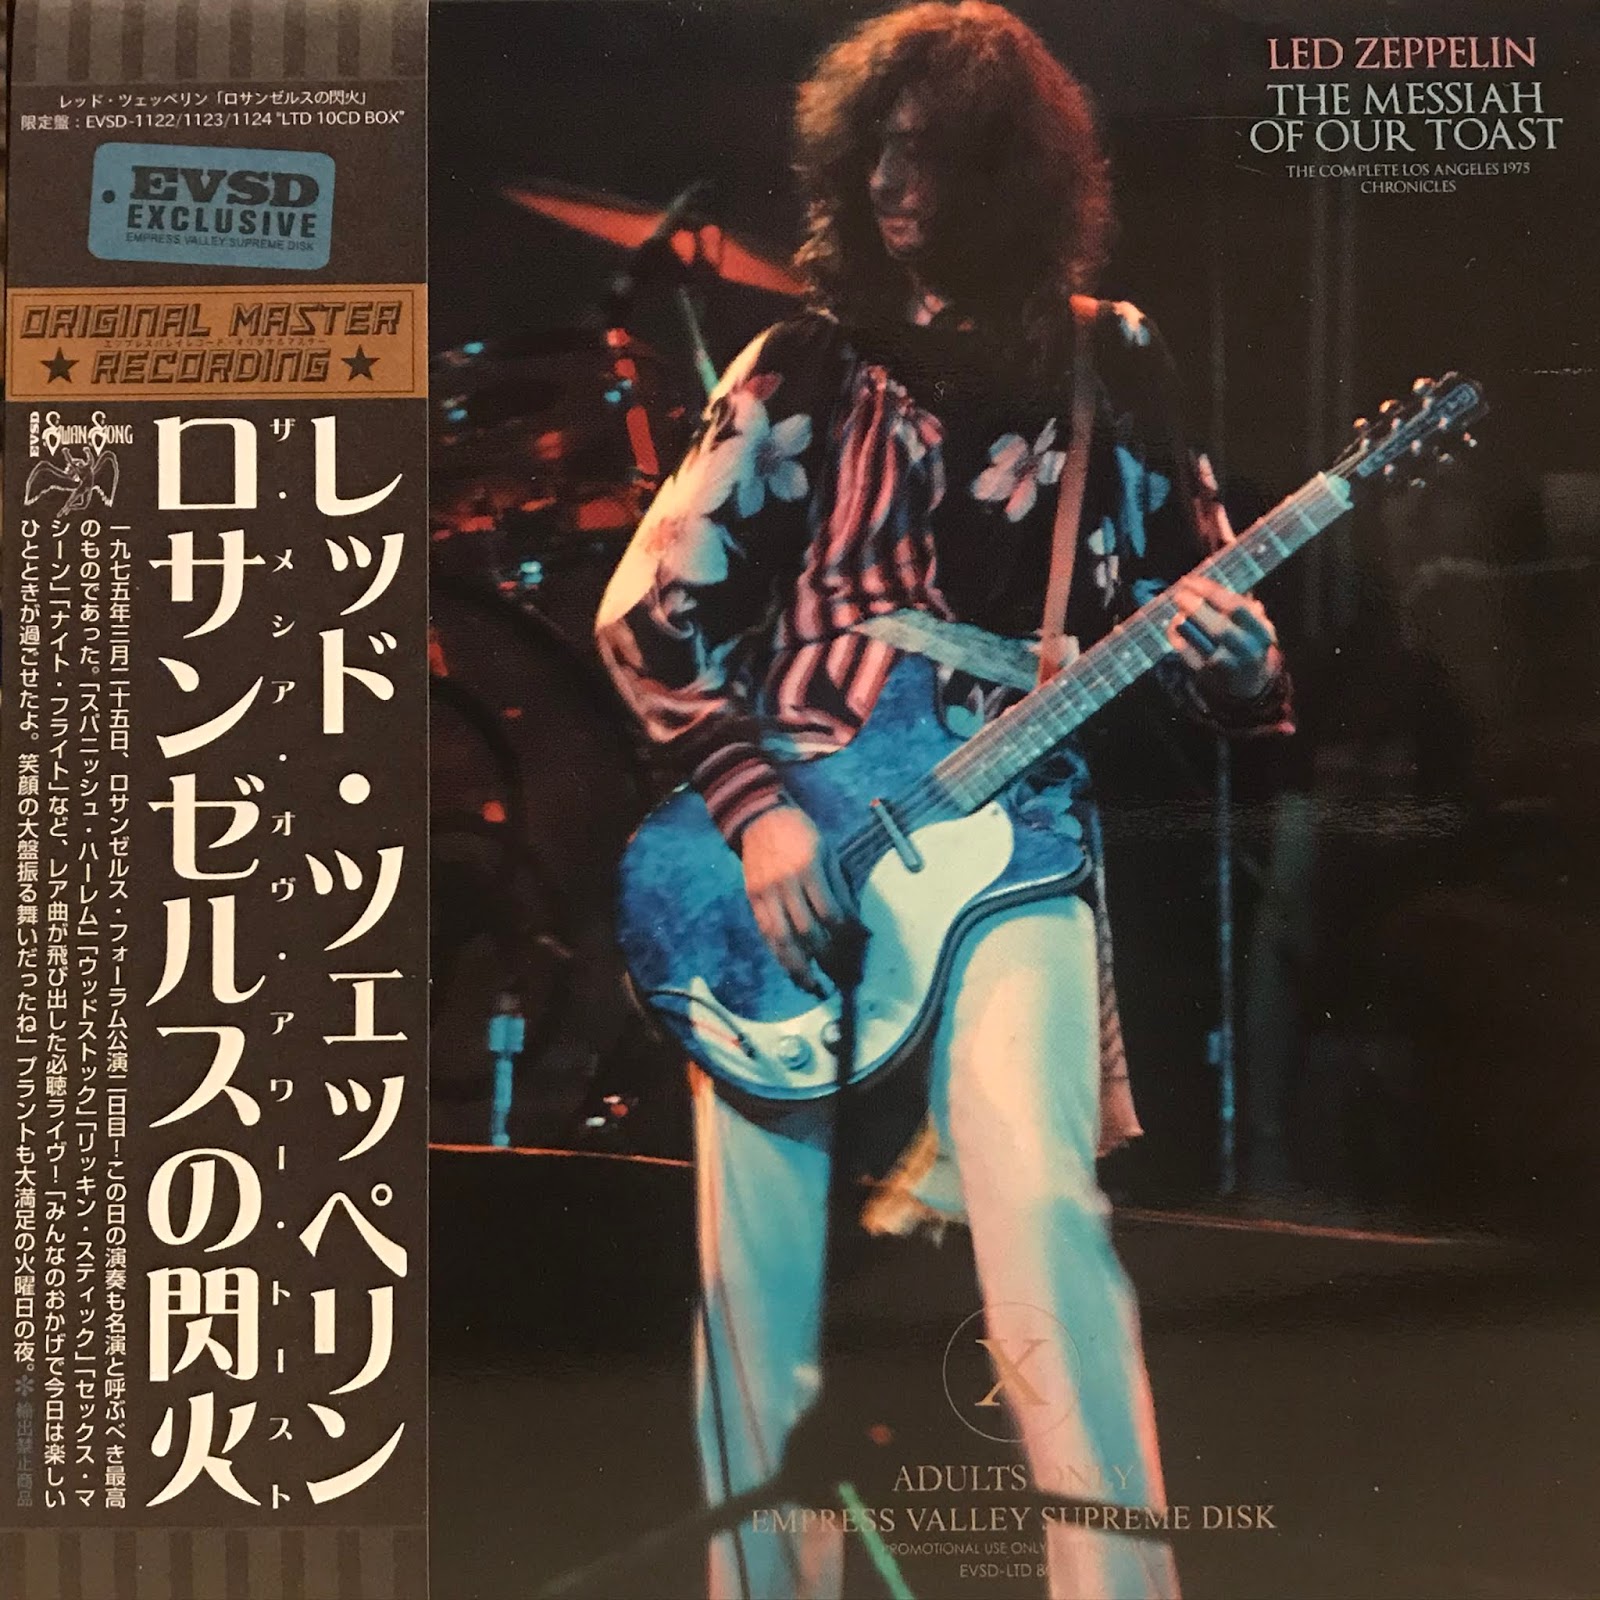 Long Live Led Zeppelin : 1975.03.25 Led Zeppelin The Messiah Of